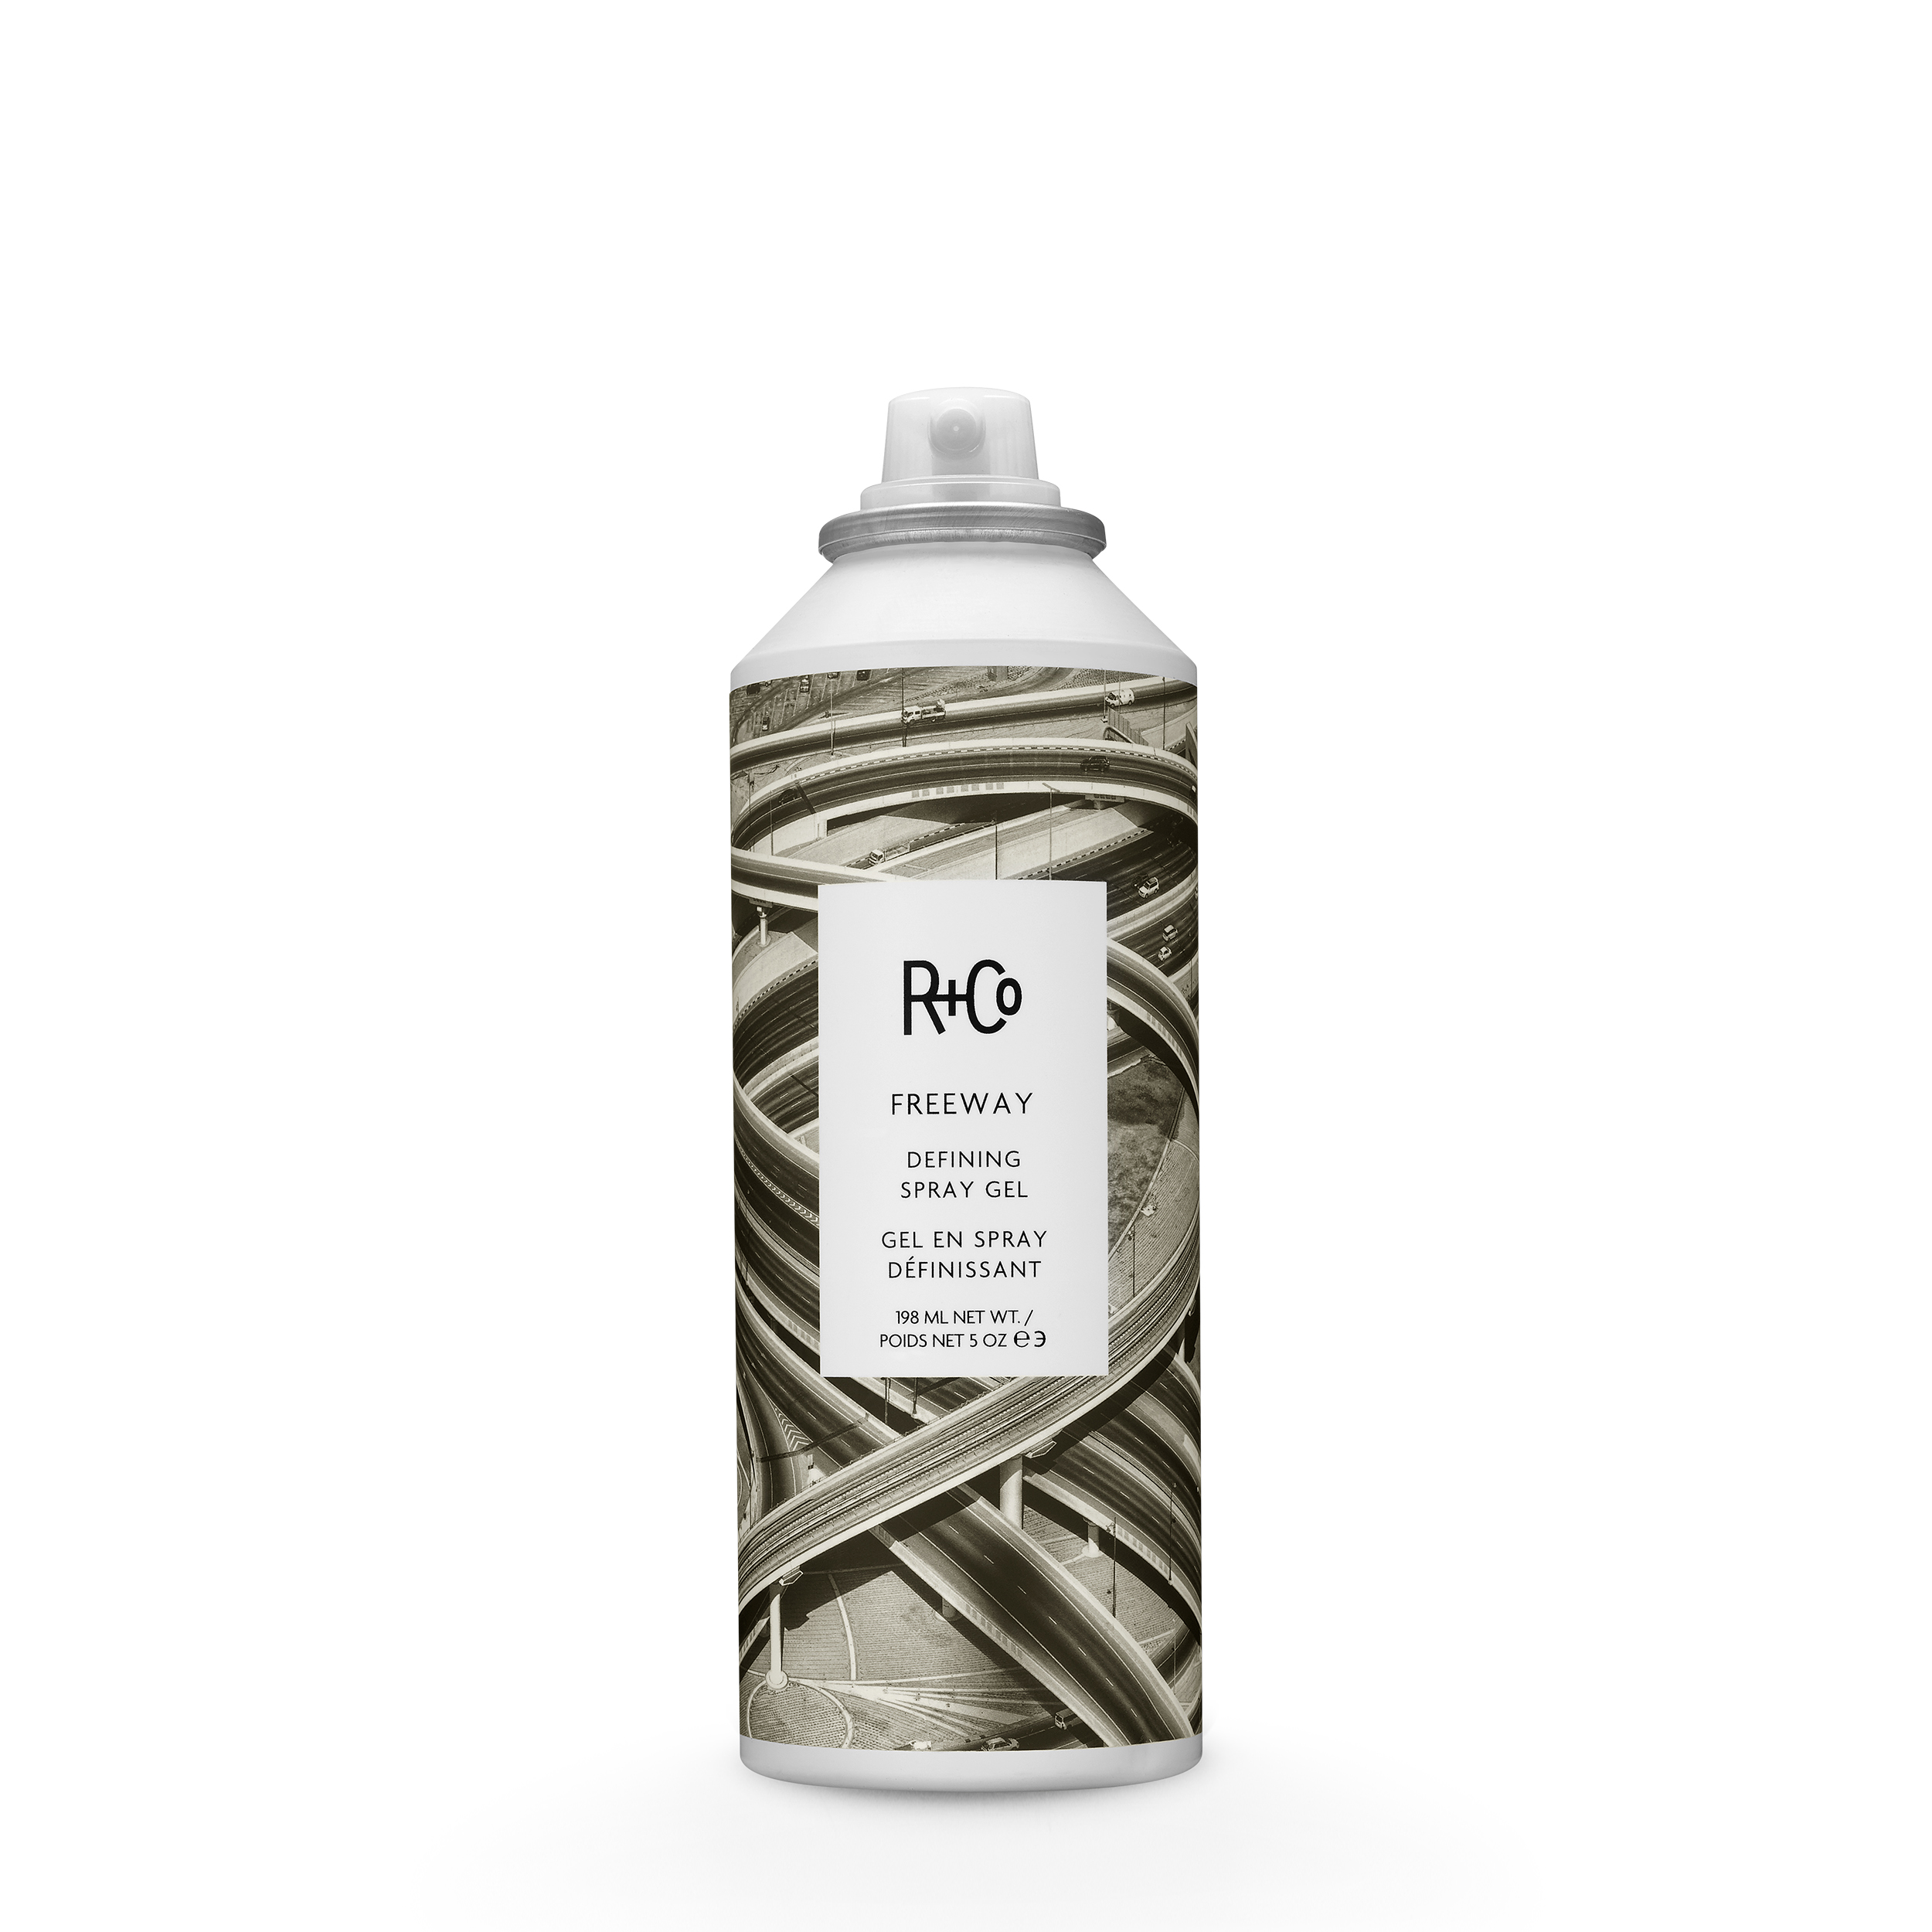 Co gel. R+co Дефинирующий гель-спрей для волос Freeway defining Spray Gel 198мл. R+co Curl defining Spray Gel 198мл. R&co лак подвижной фиксации. Гель для подвижной фиксации r+co.